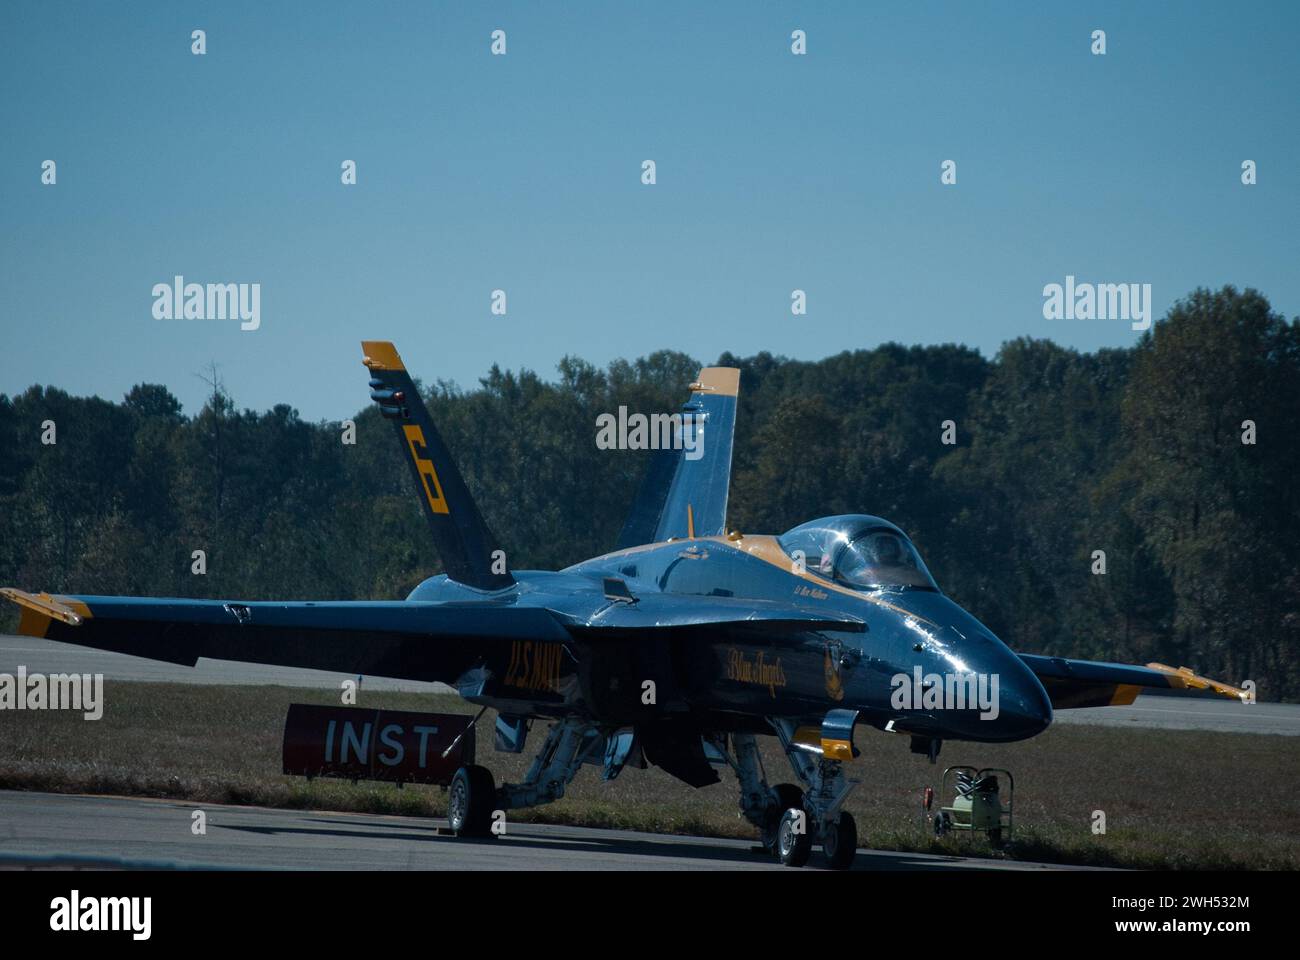 Atlanta, USA - 17. Oktober 2010: Kampfflugzeug der USA auf der Landebahn startbereit. Stockfoto